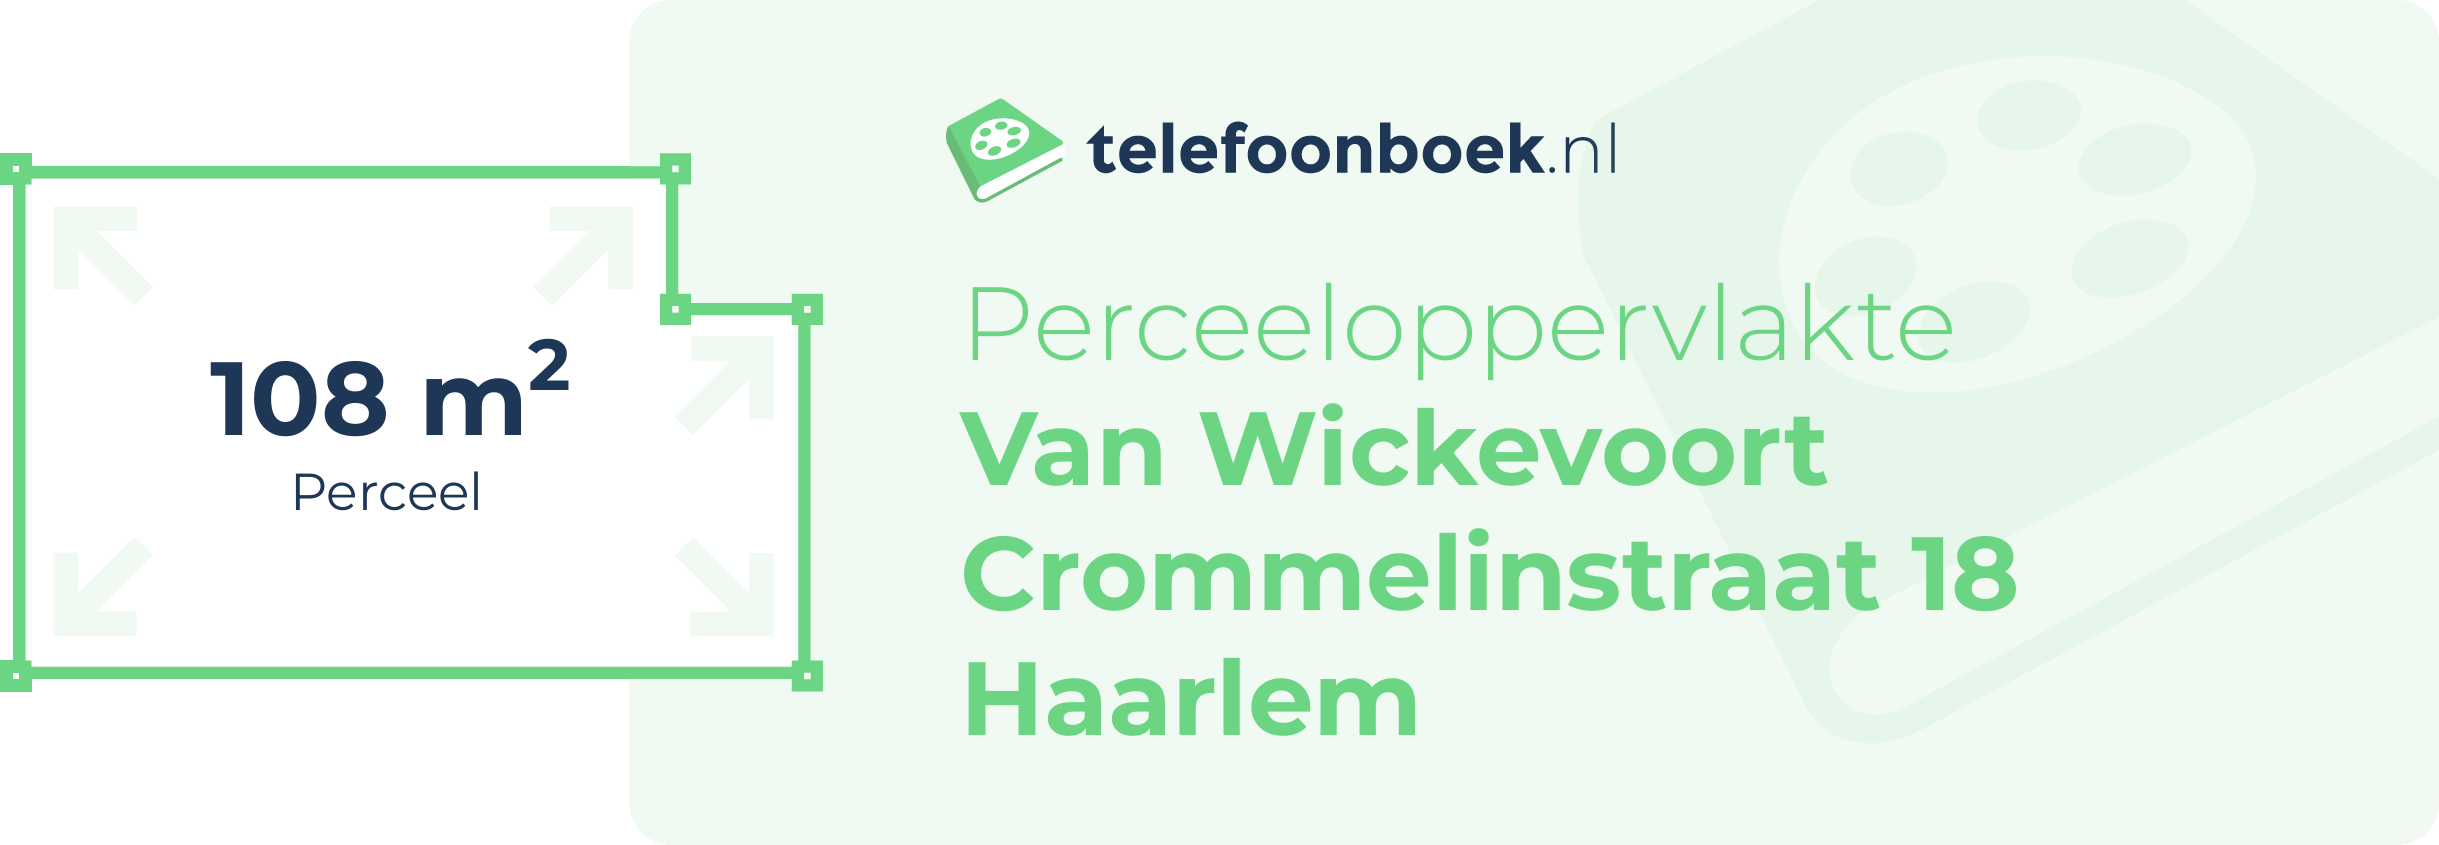 Perceeloppervlakte Van Wickevoort Crommelinstraat 18 Haarlem